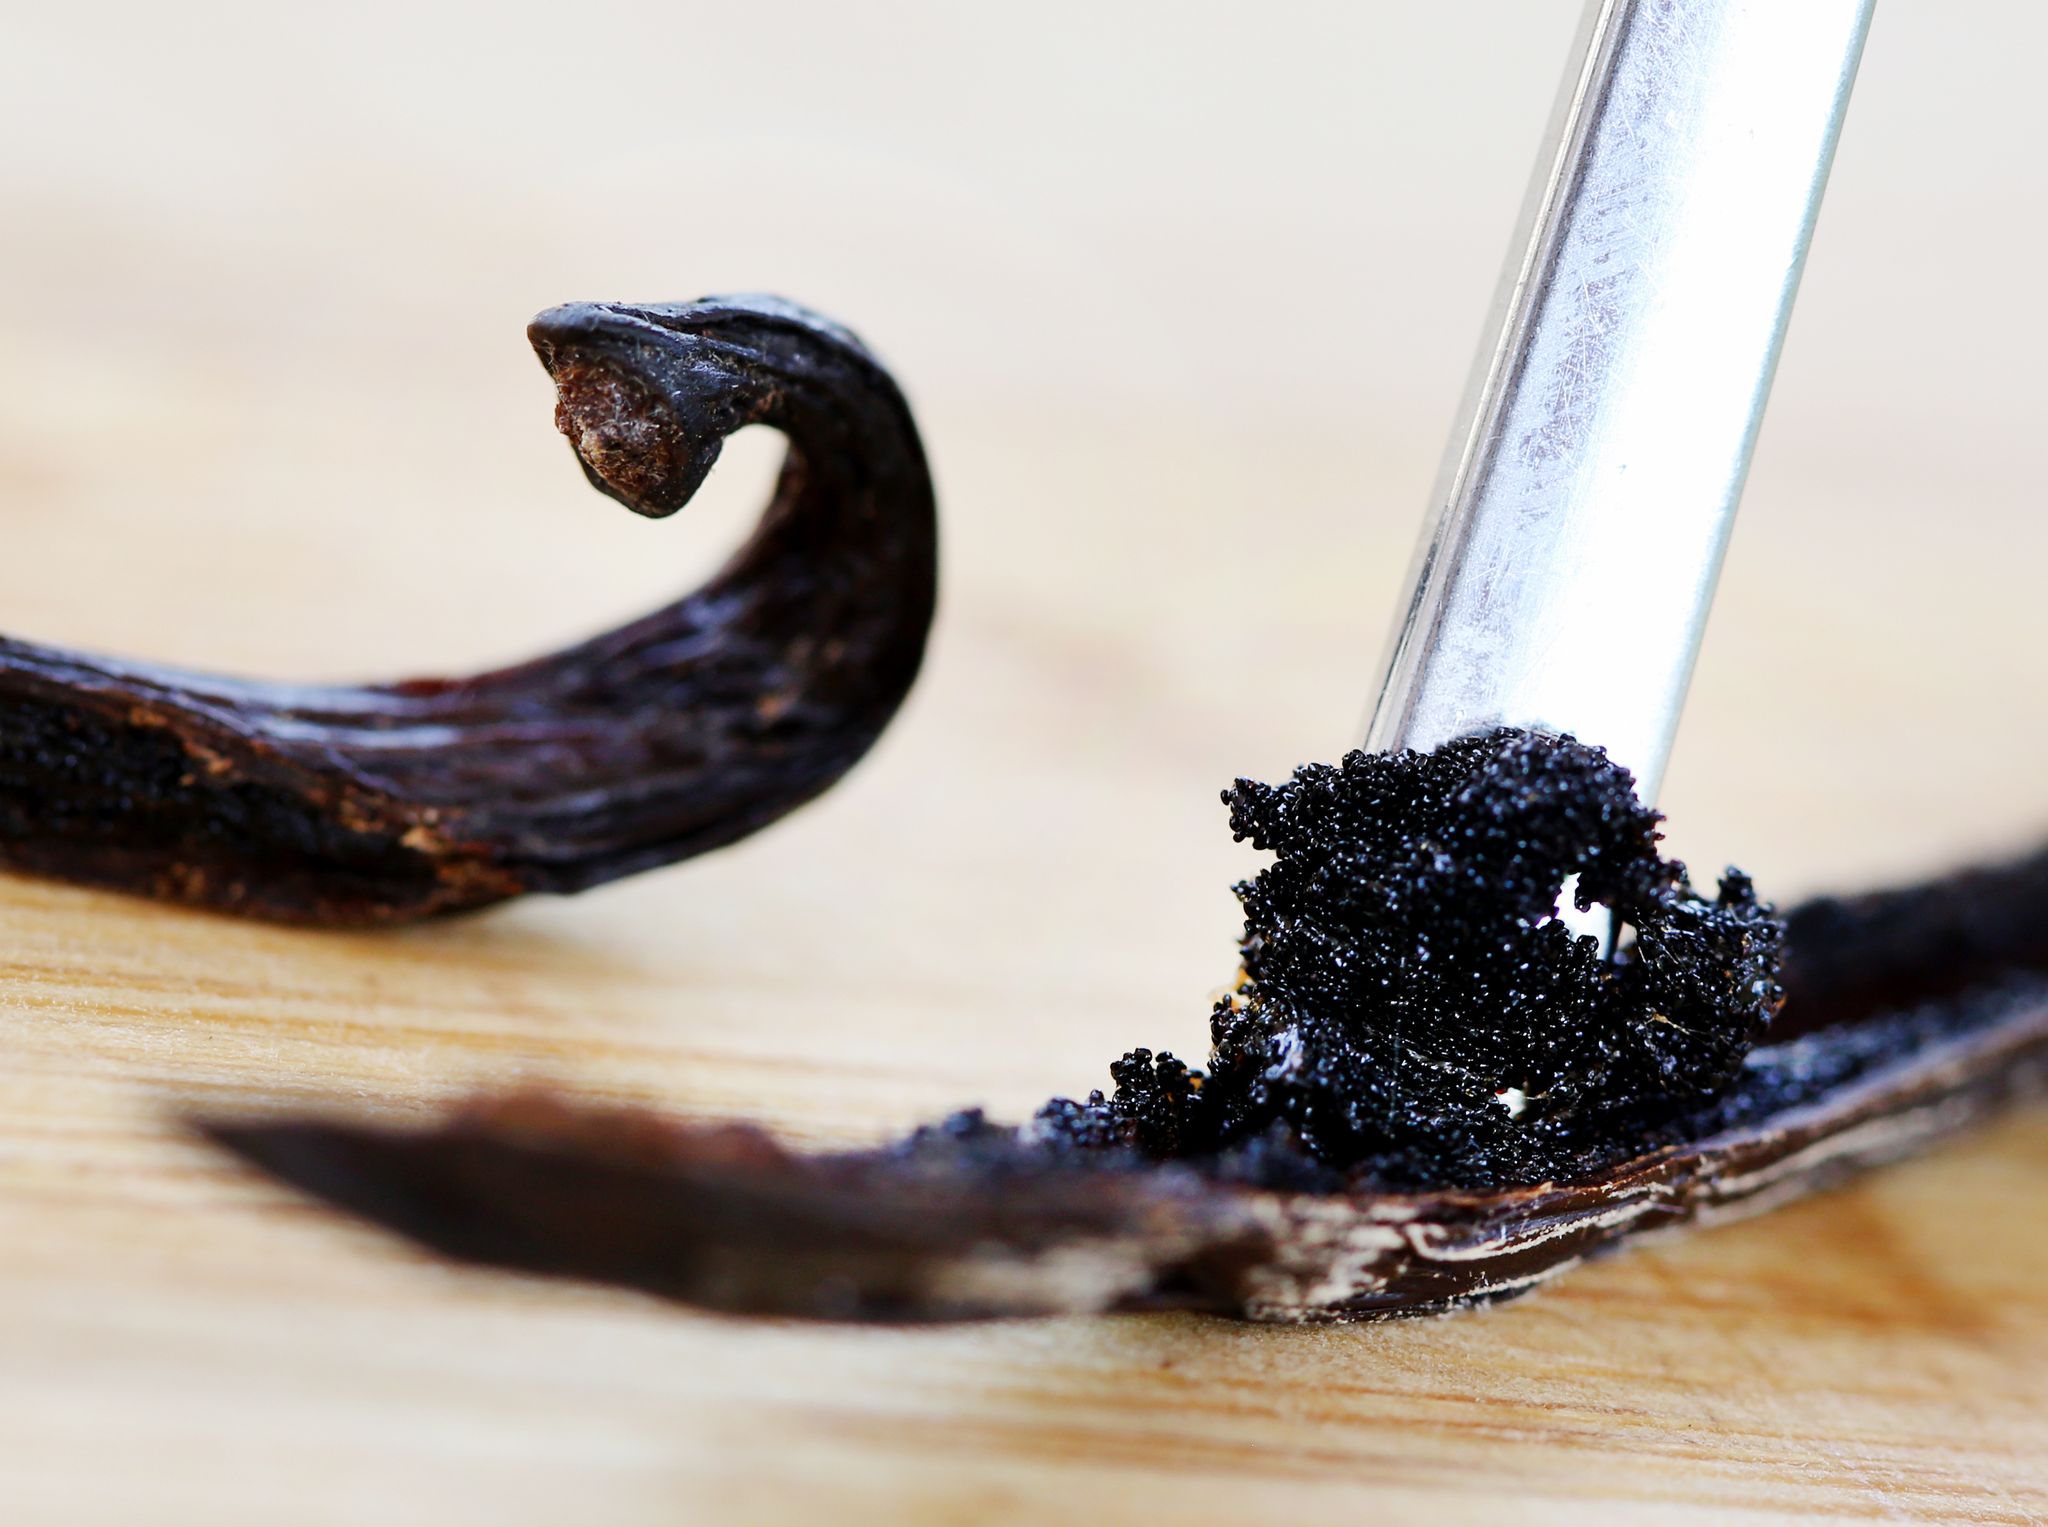 Um an das Fruchtmark zu gelangen, schneidet man die ganze Vanille-Schote der Länge nach auf. So lassen sich Samen und das Mark herauskratzen.